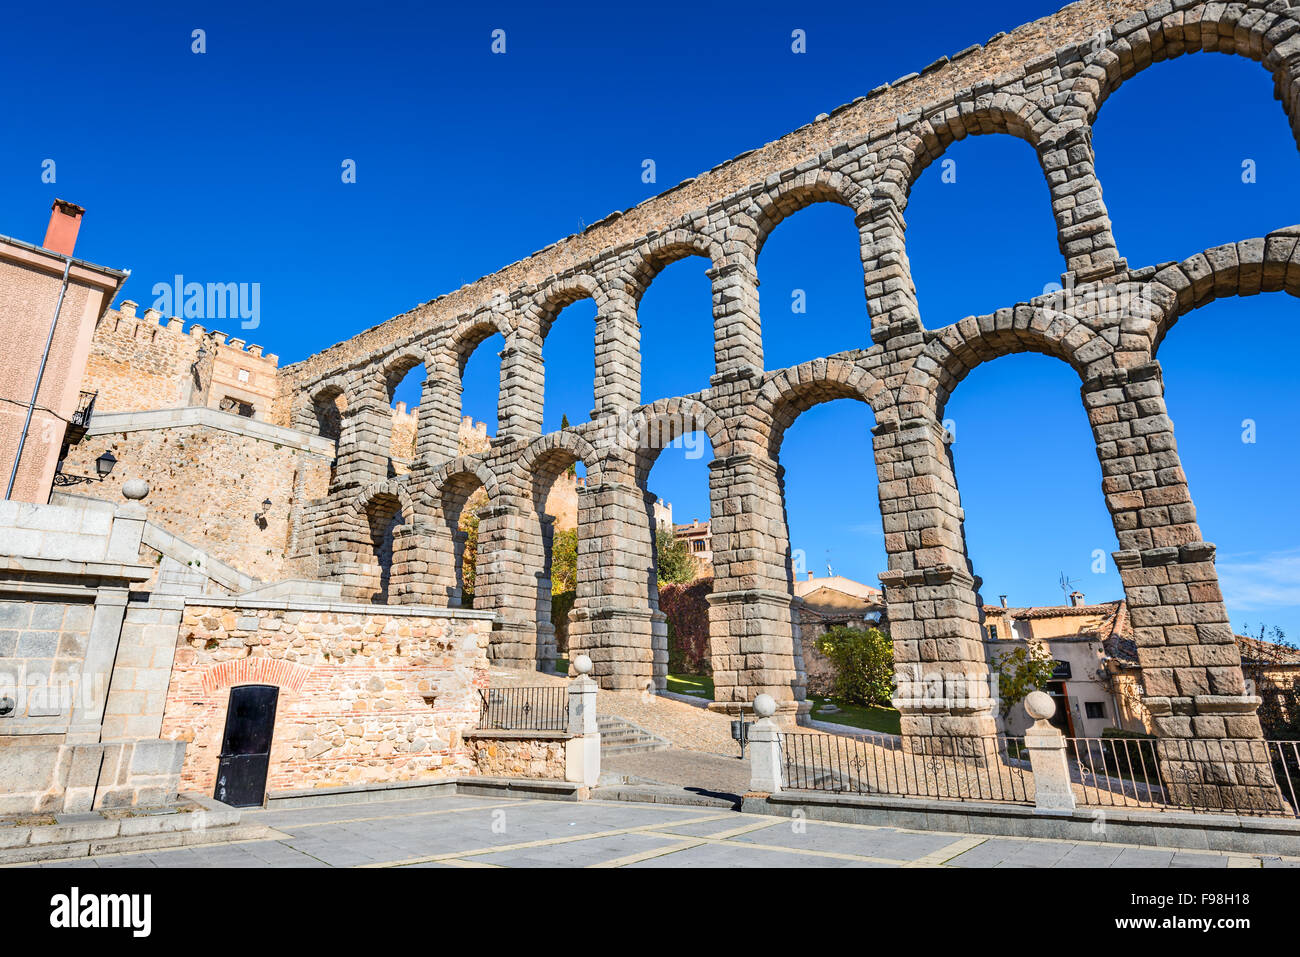 Segovia, Castilla y Leon. Römischer Aquädukt Brücke von Segovia in Kastilien, Spanien. Stockfoto